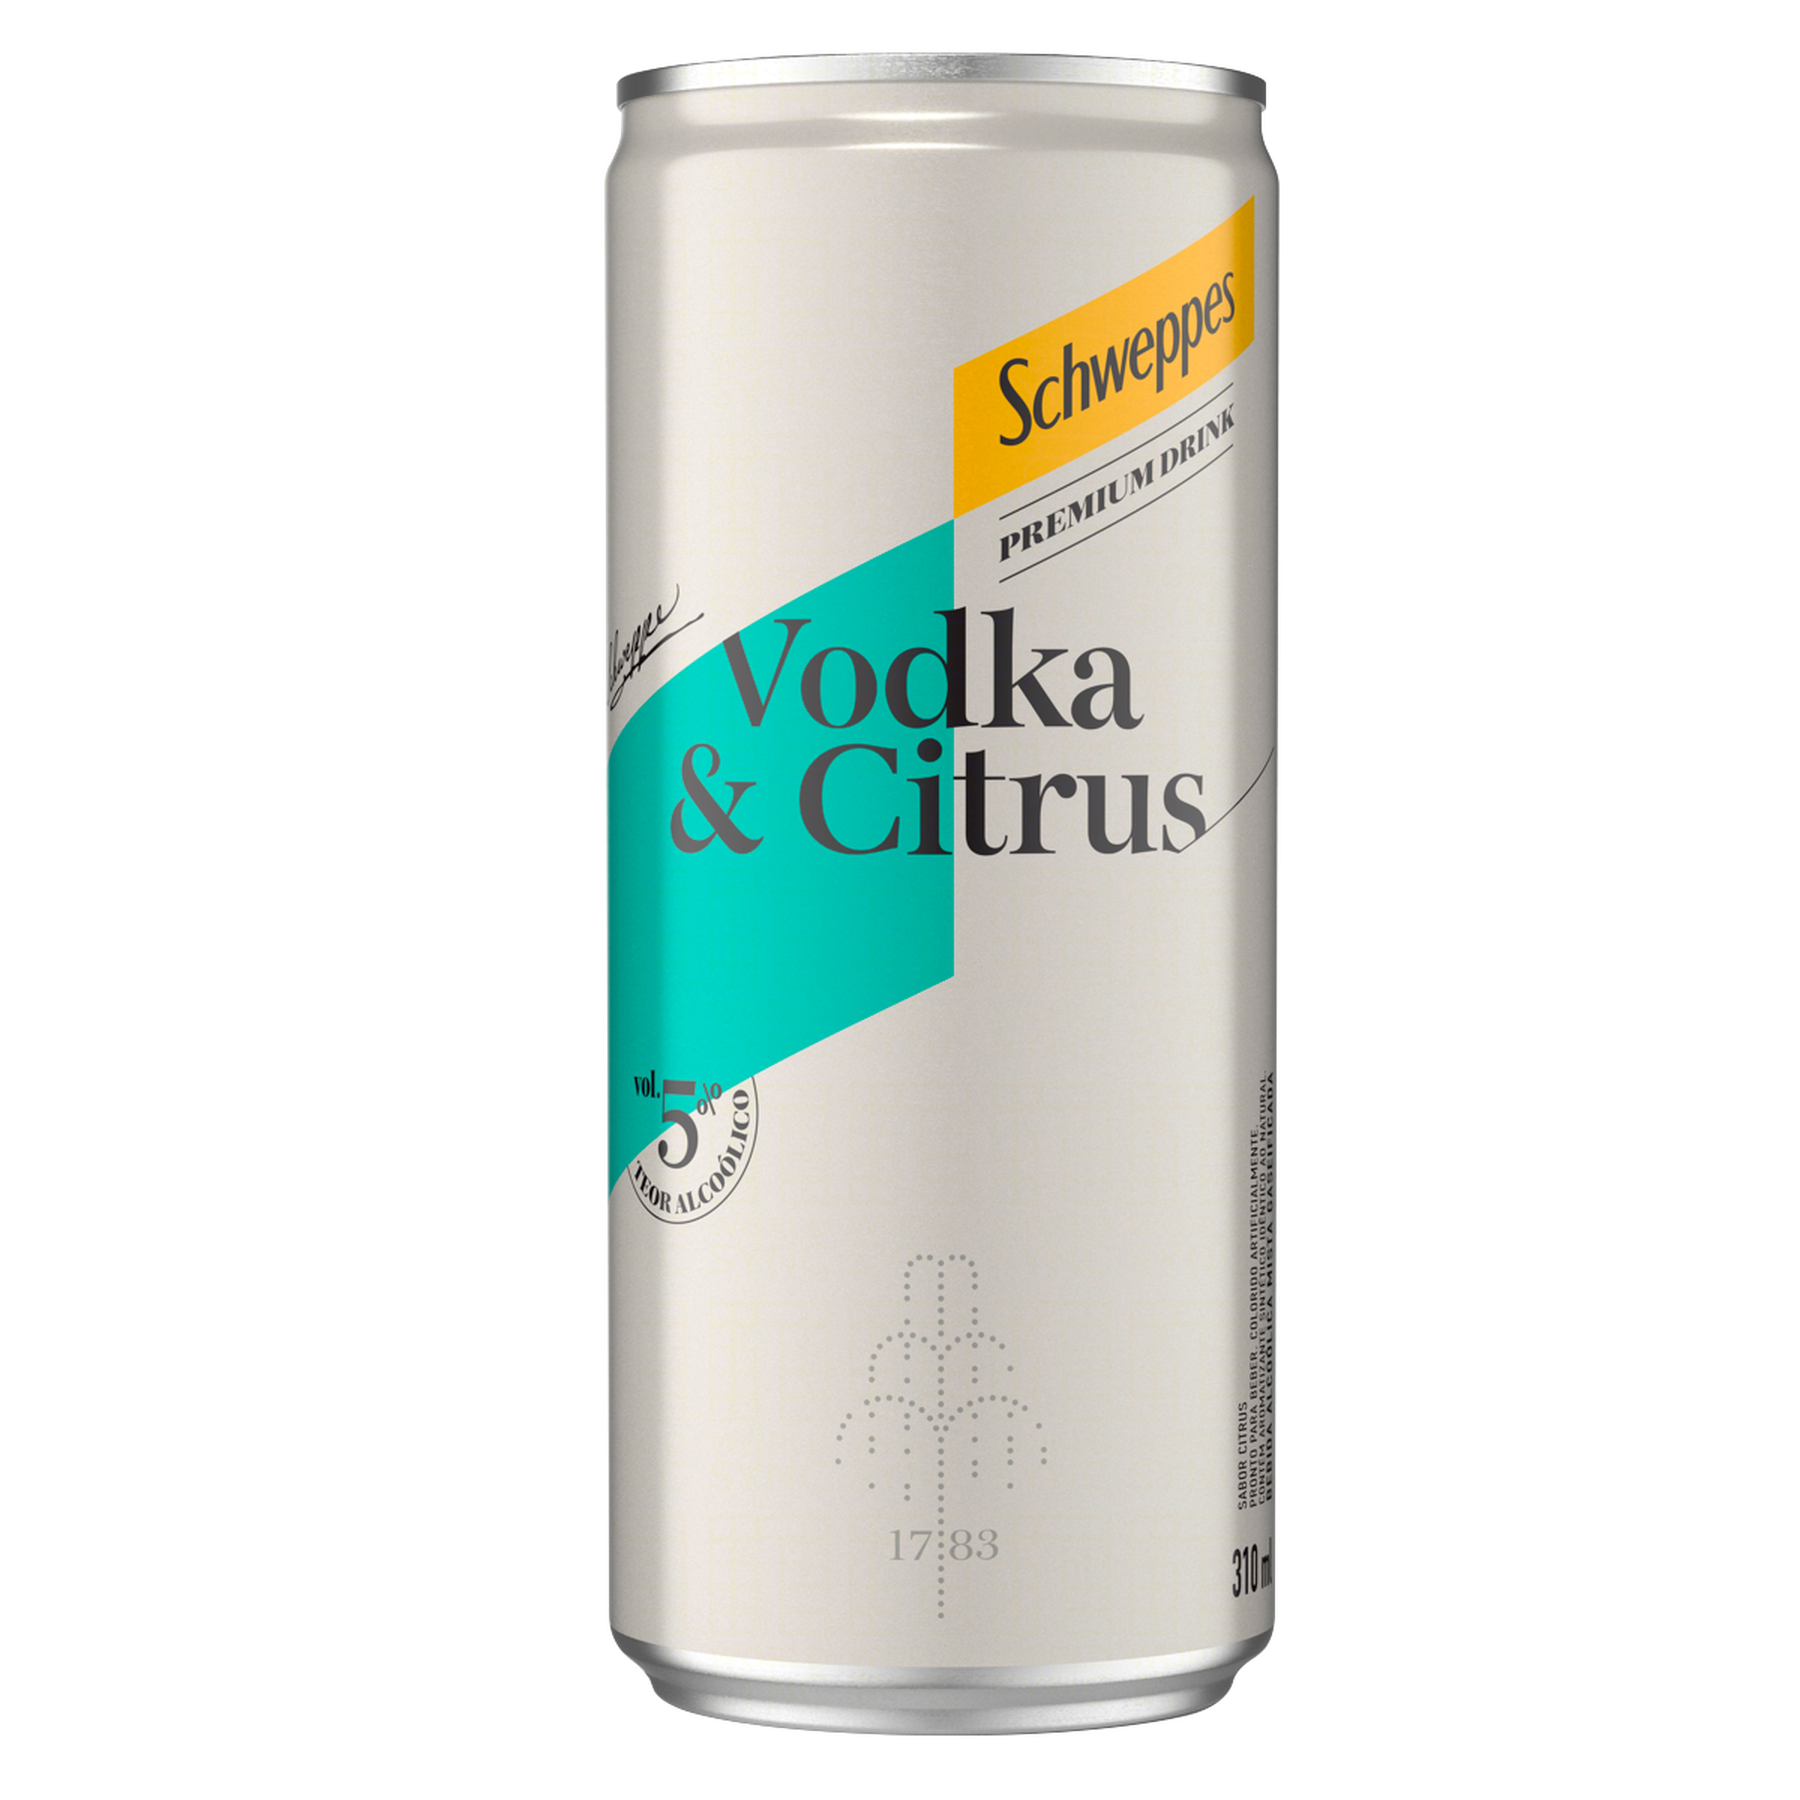 Vodka e Citrus Schweppes Premium Drink Lata 310ml